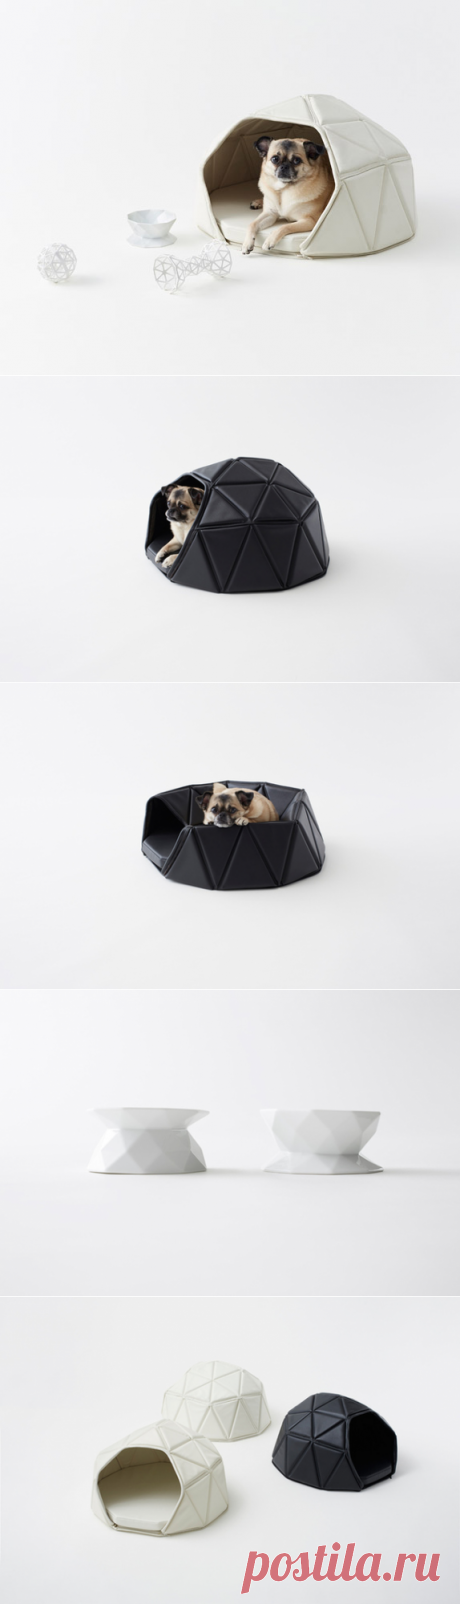 Аксессуары для домашних собак от студии Nendo | Мебель для дома в журнале AD | AD Magazine